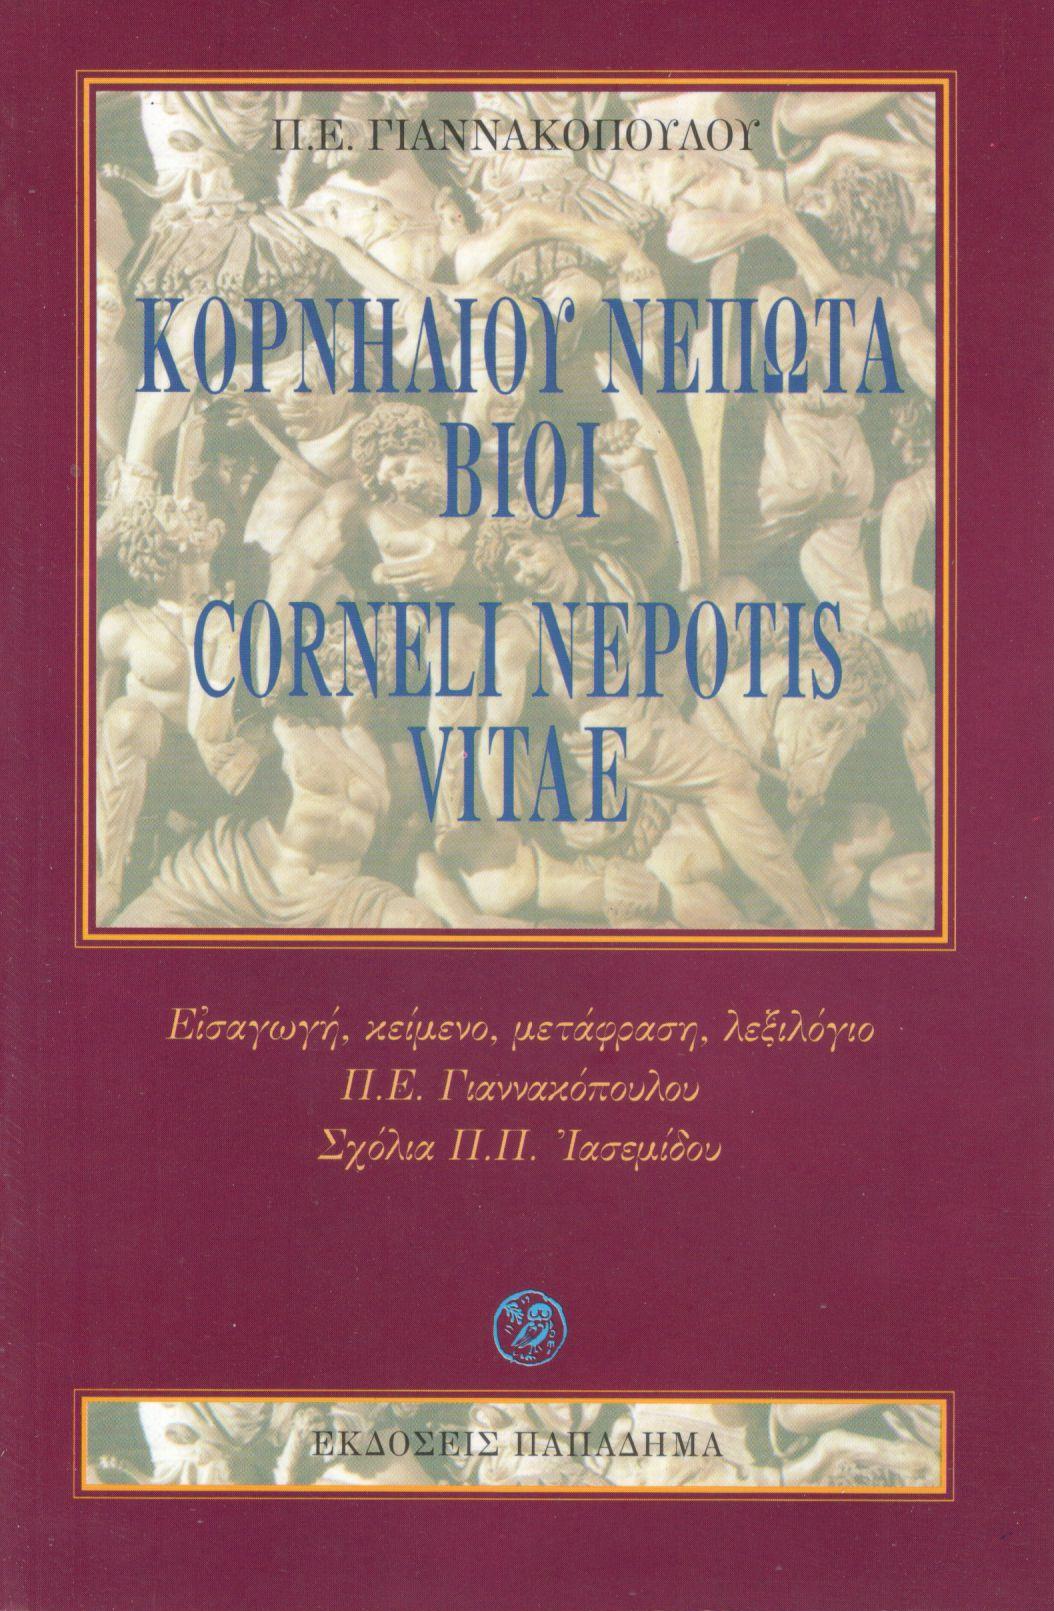 Κορνηλίου Νέπωτα βίοι (Corneli Nepotis vitae)